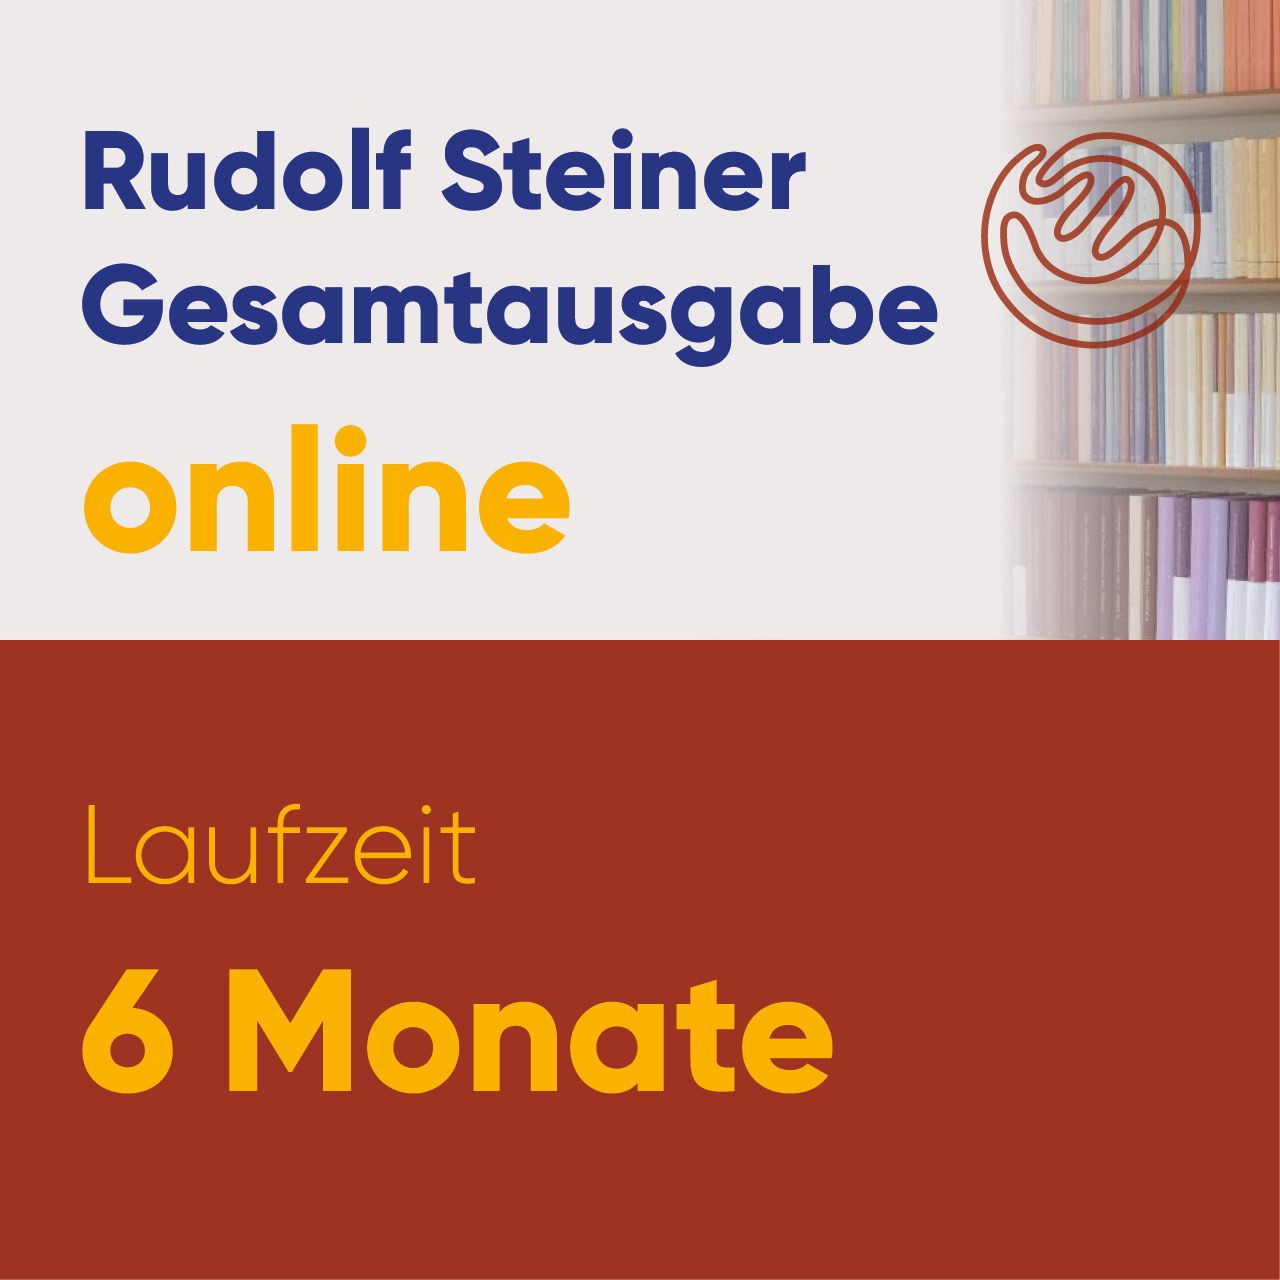 Rudolf Steiner Gesamtausgabe online Laufzeit 6 Monate